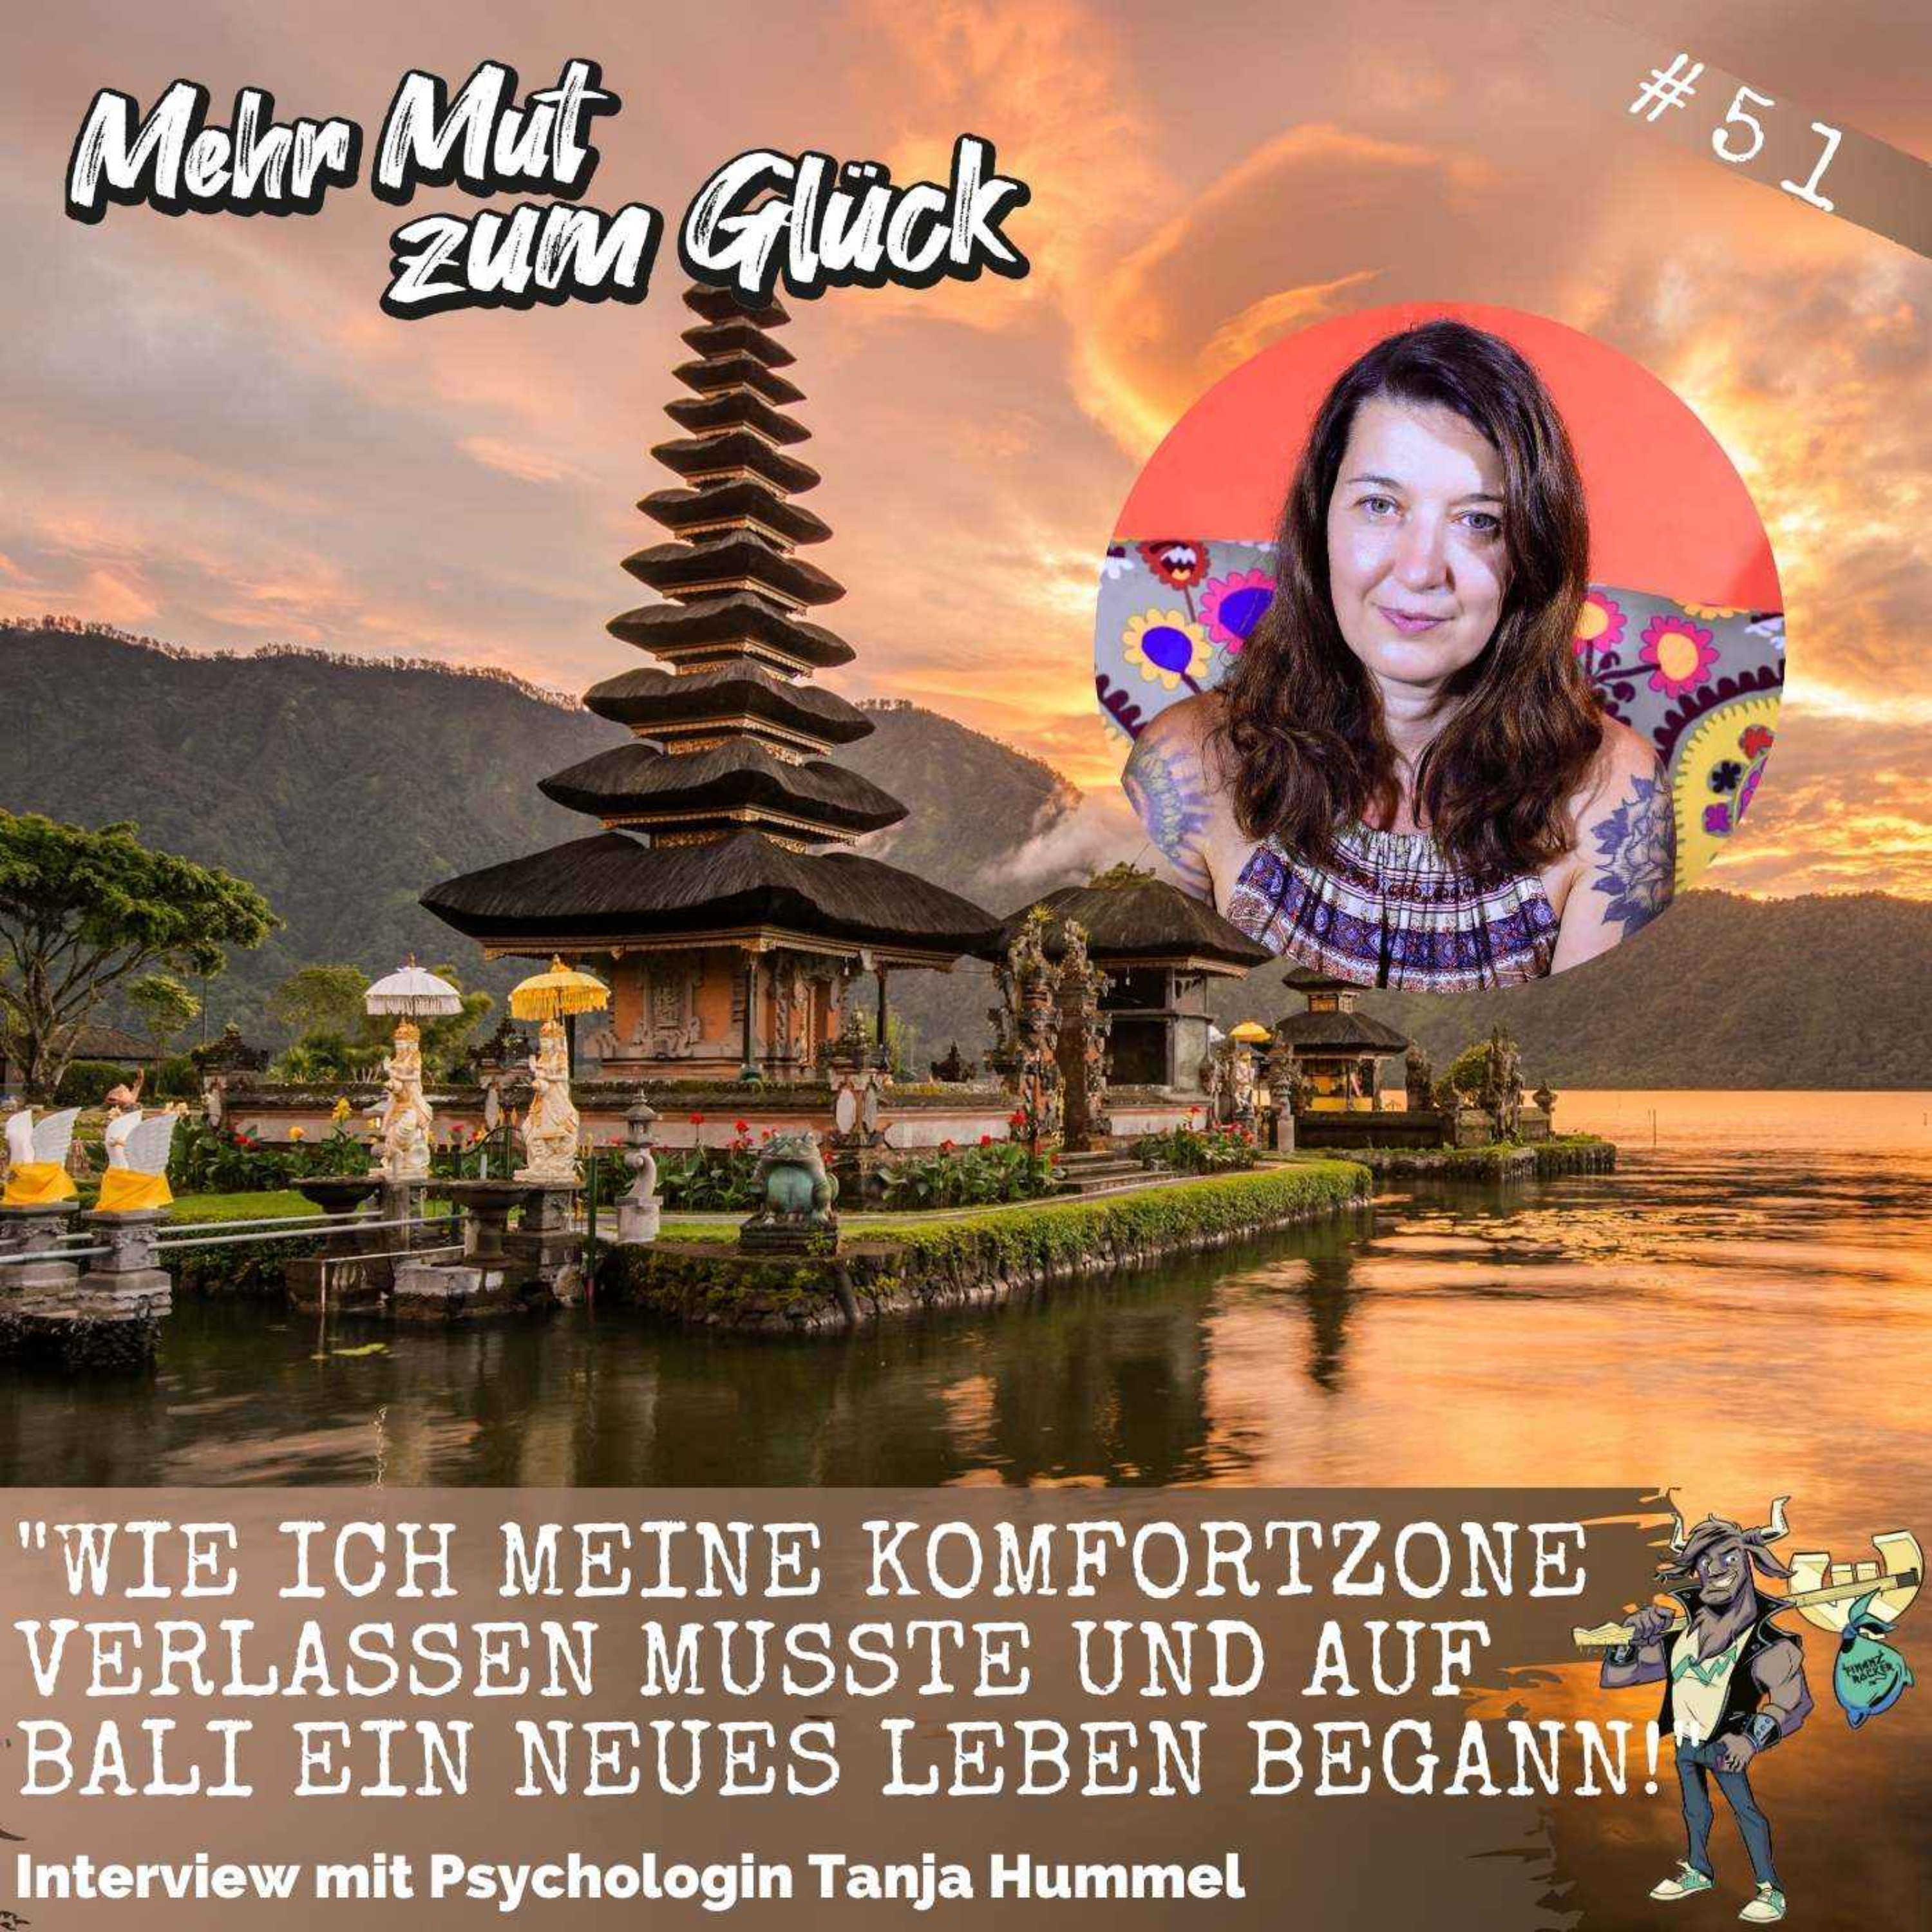 Folge 51: ”Wie ich meine Komfortzone verlassen musste und auf Bali ein neues Leben begann!” - Interview mit Psychologin Tanja Hummel